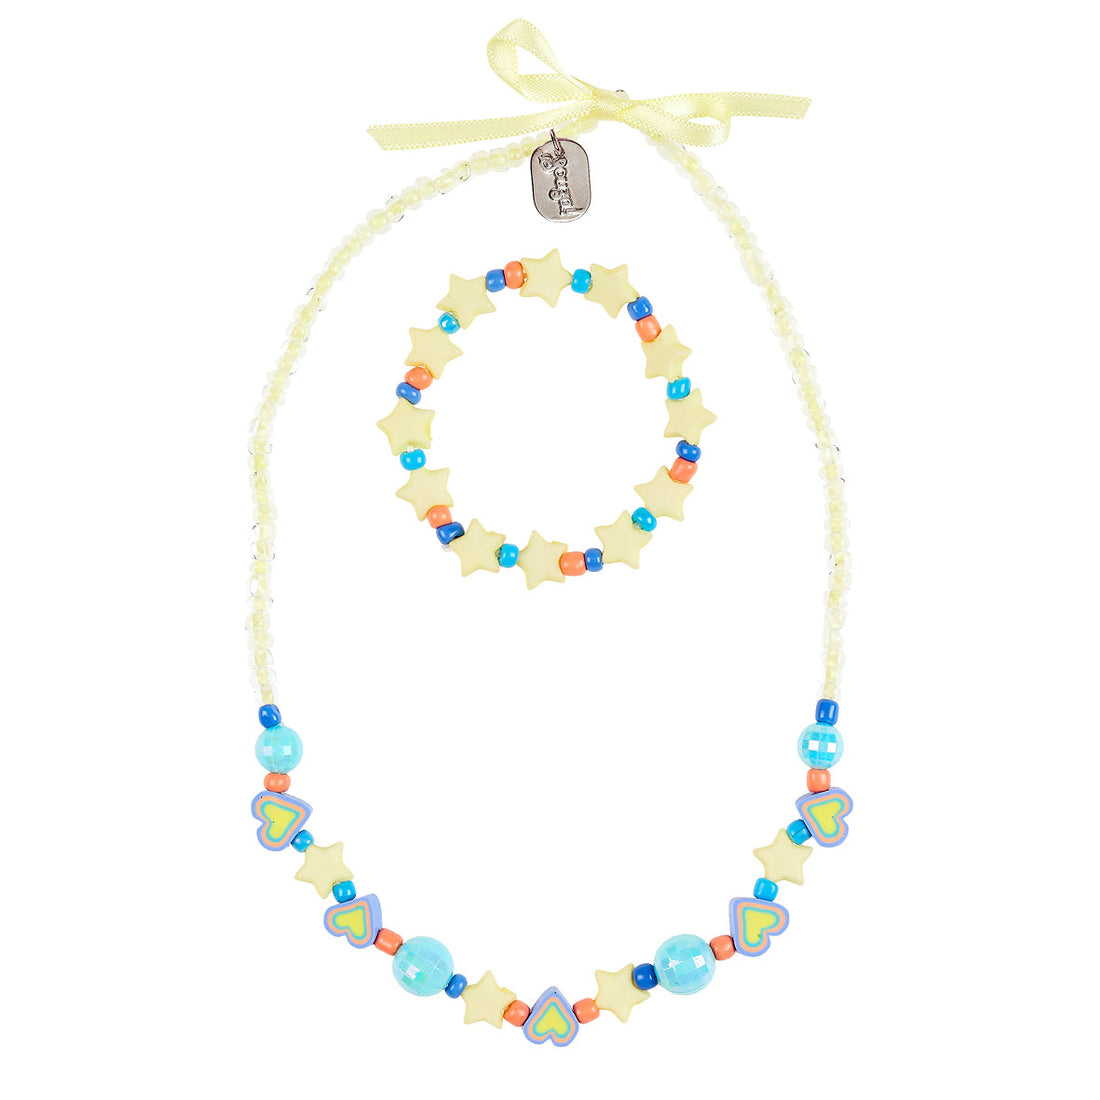 souza-necklace-and-bracelet-set-kajsa-souz-106701